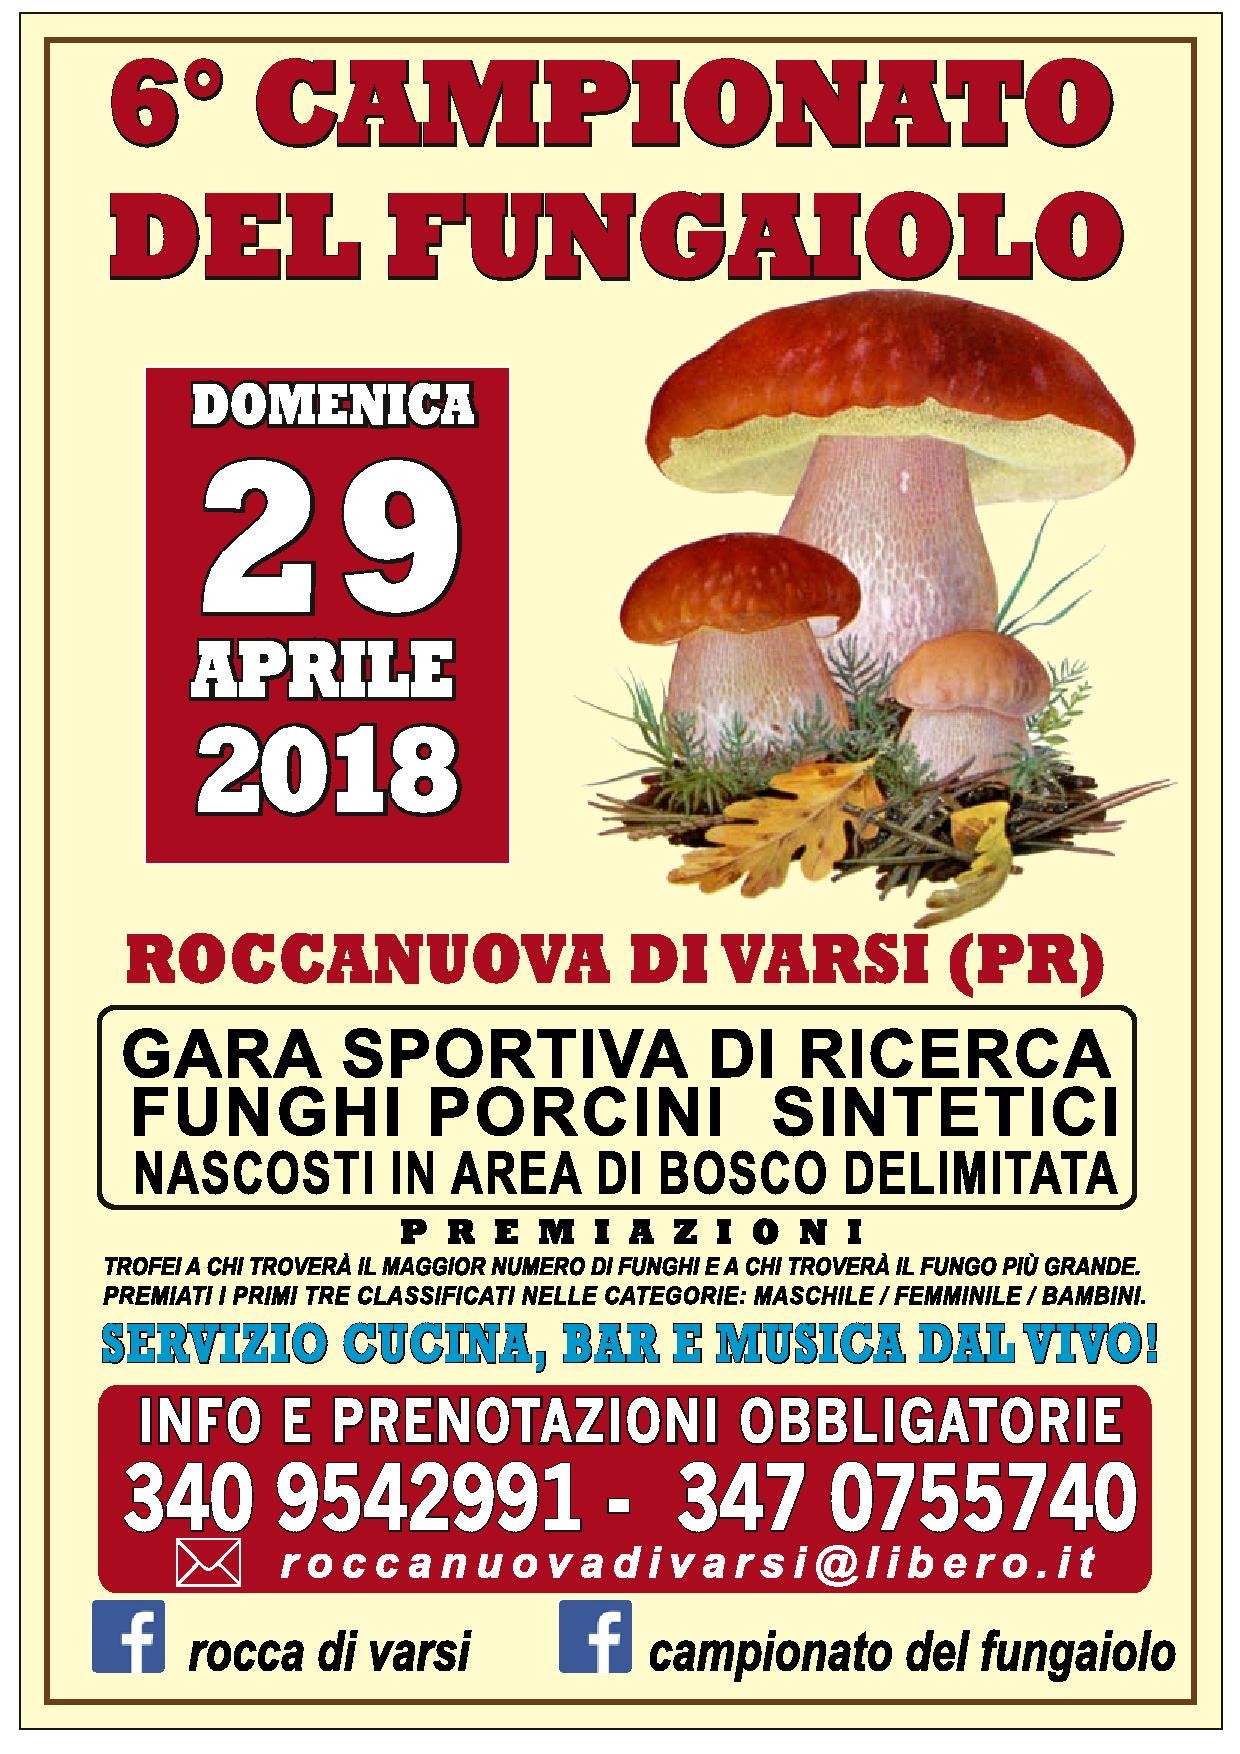 "6° CAMPIONATO DEL FUNGAIOLO" a Roccanuova di Varsi